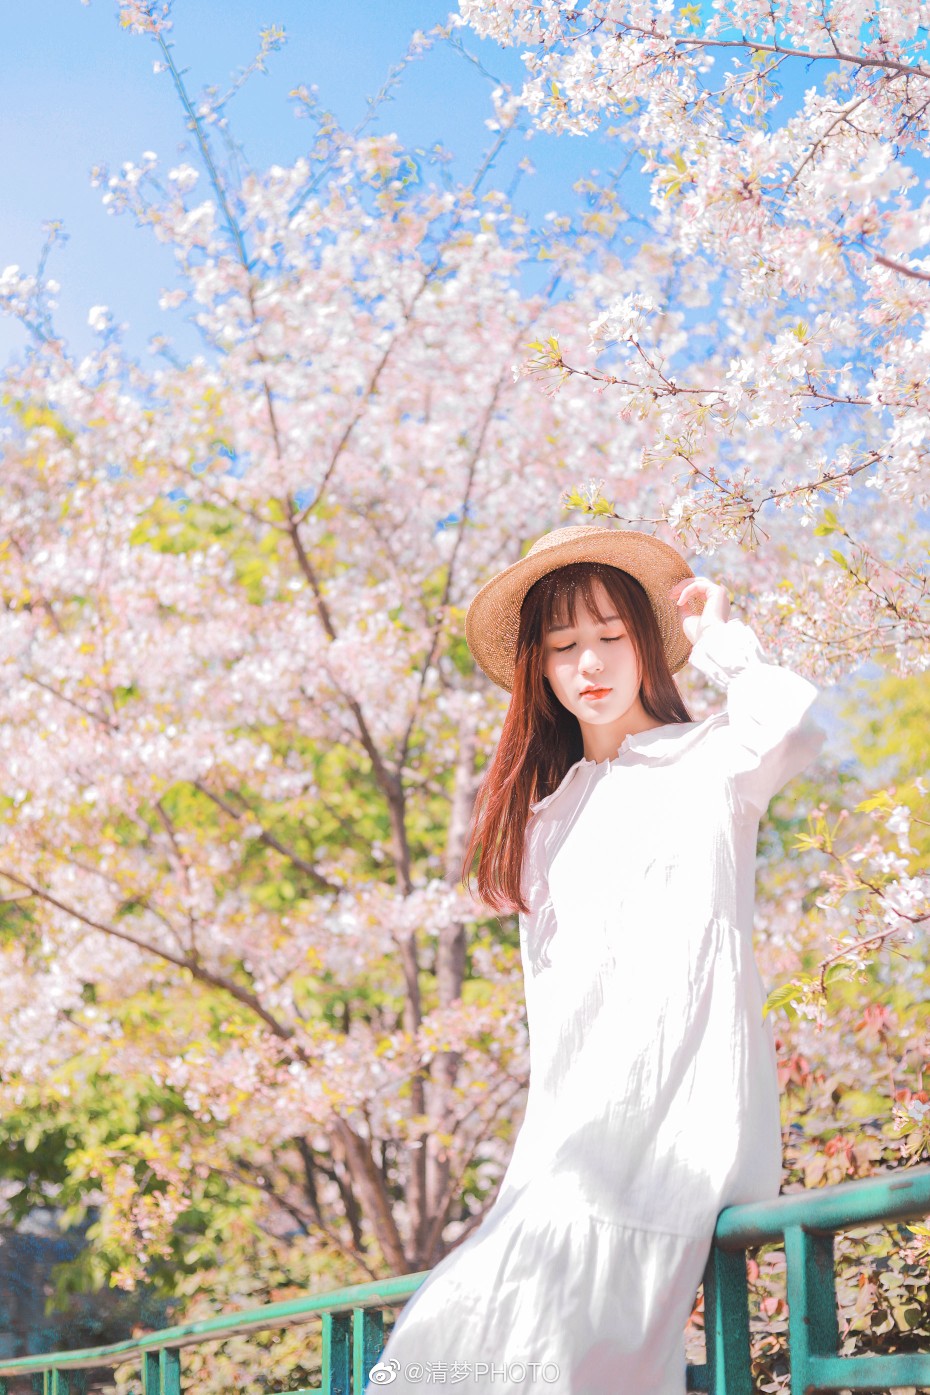 #成都约拍#
桜の花 、
出境 @织田酒里
摄影 @清梦PHOTO
#大理旅拍##旧时光是个美人# ​